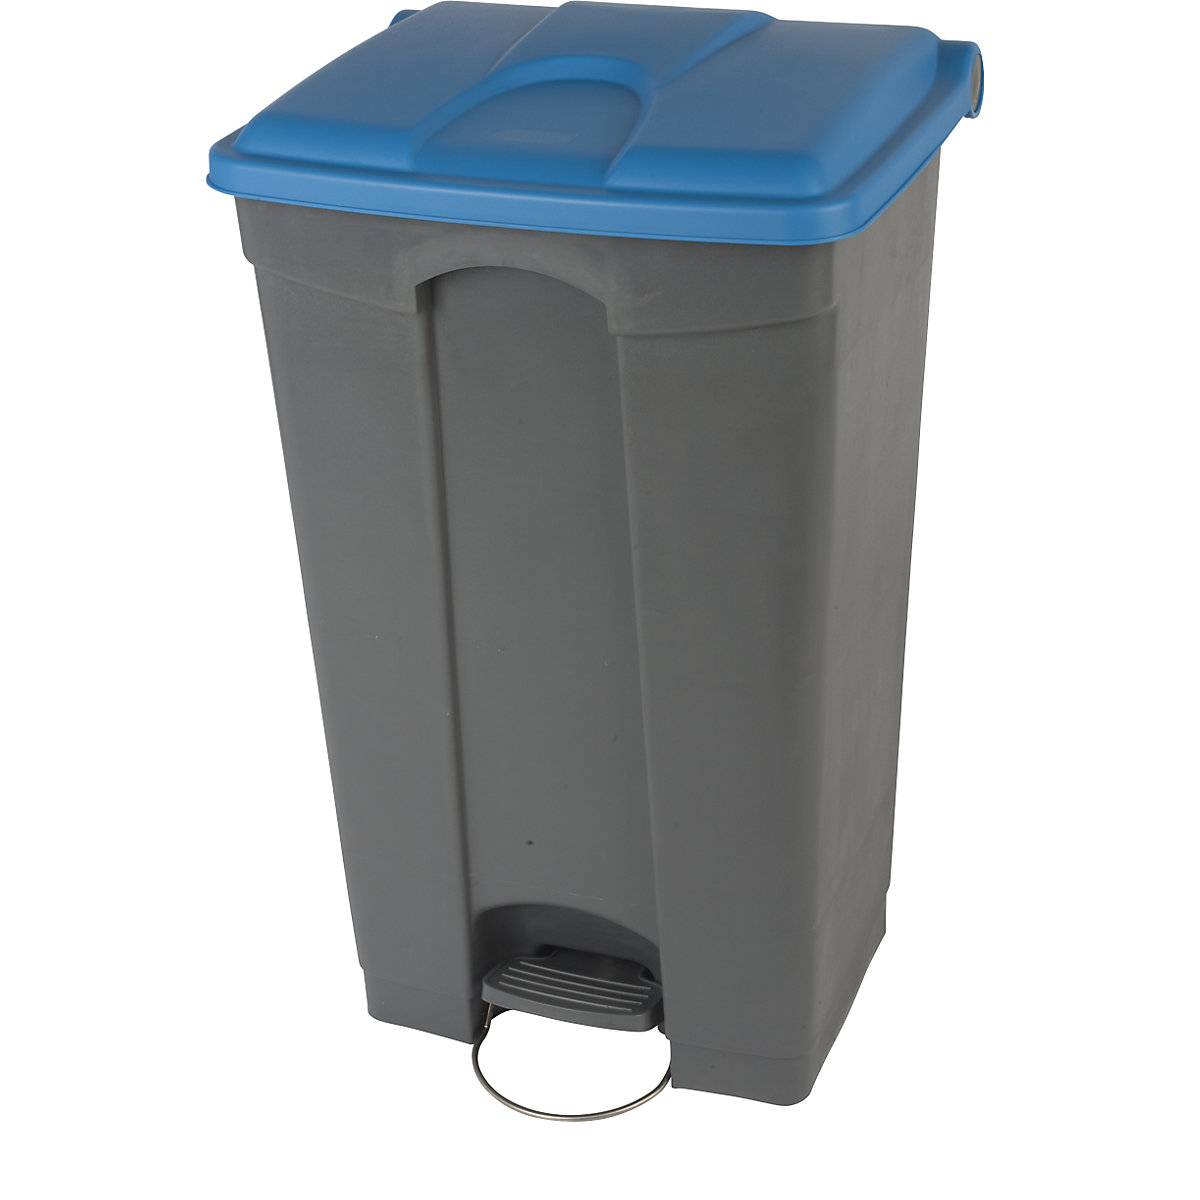 Afvalverzamelaar met pedaal, inhoud 90 l, b x h x d = 505 x 790 x 410 mm, grijs, deksel blauw